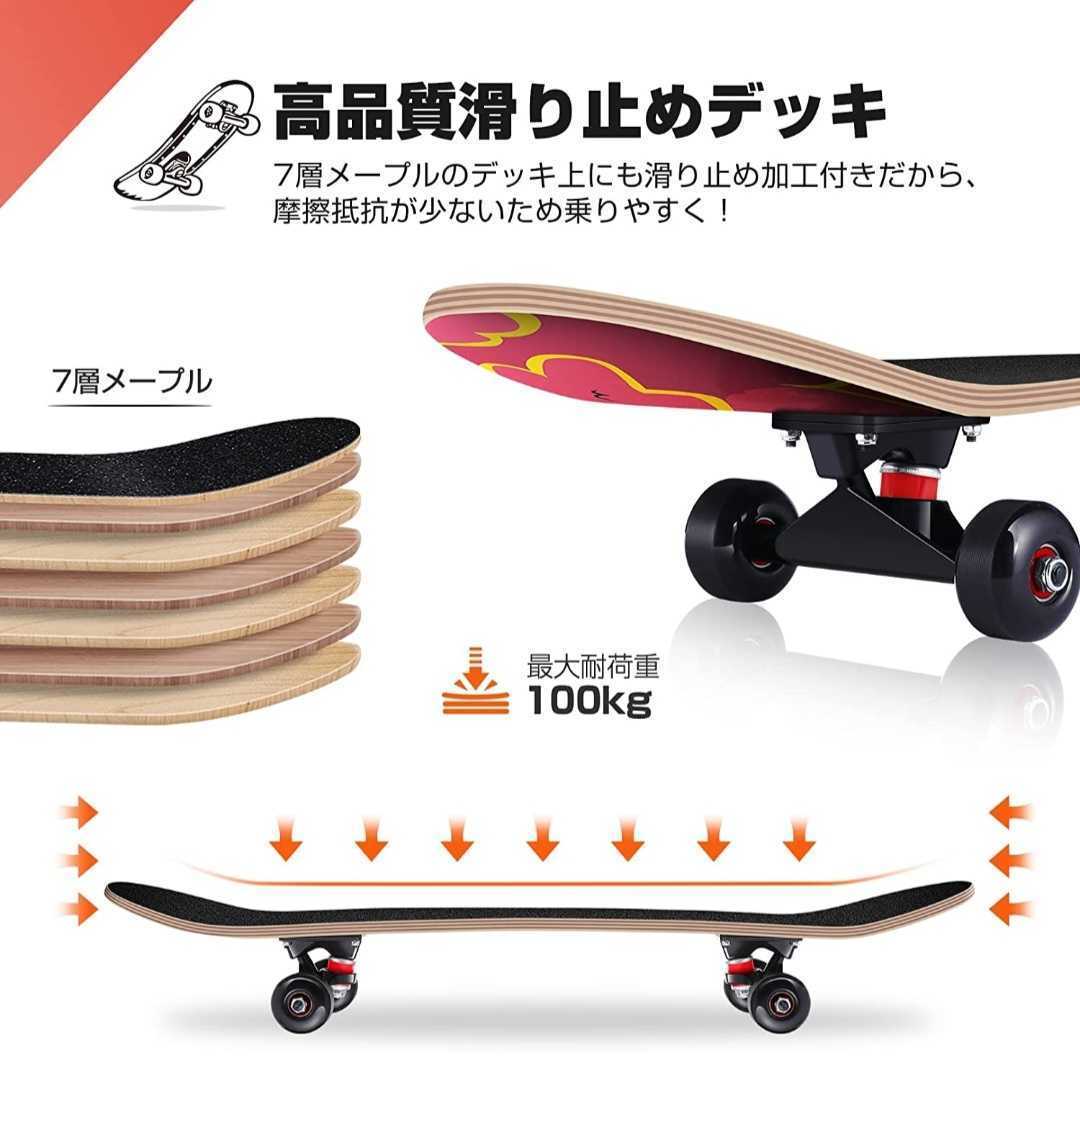 267円 【特別セール品】 スケートボード ベアリング スケボー ABEC11 608 高速回転 低騒音